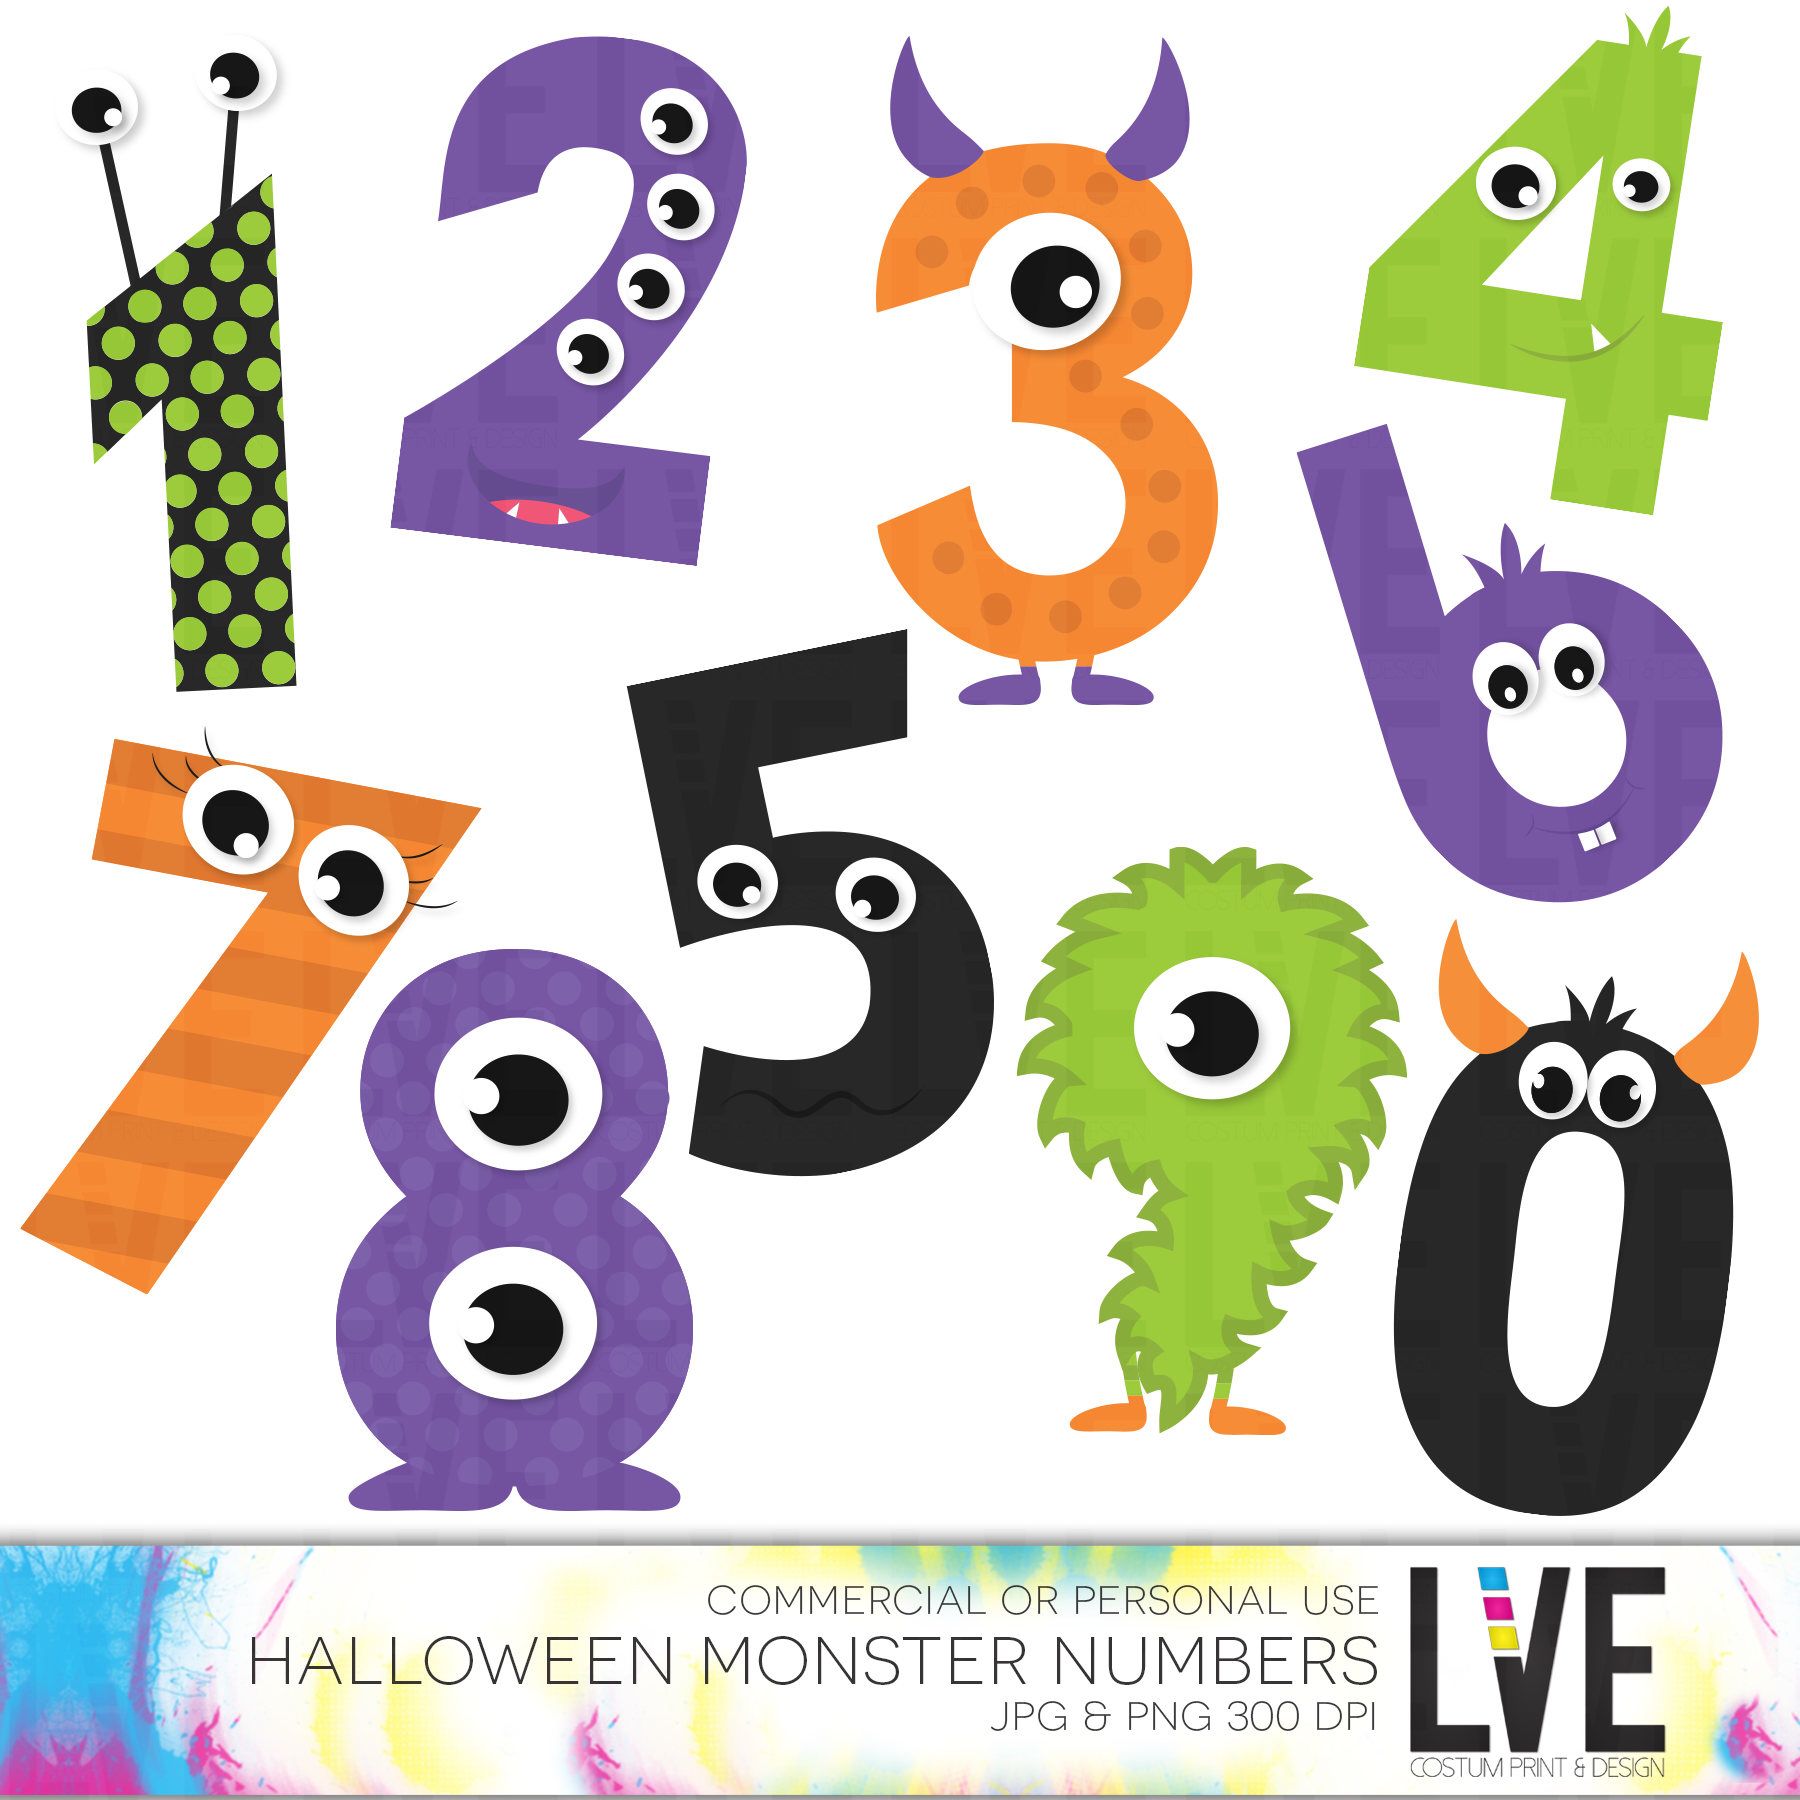 Cute monsters numbers.